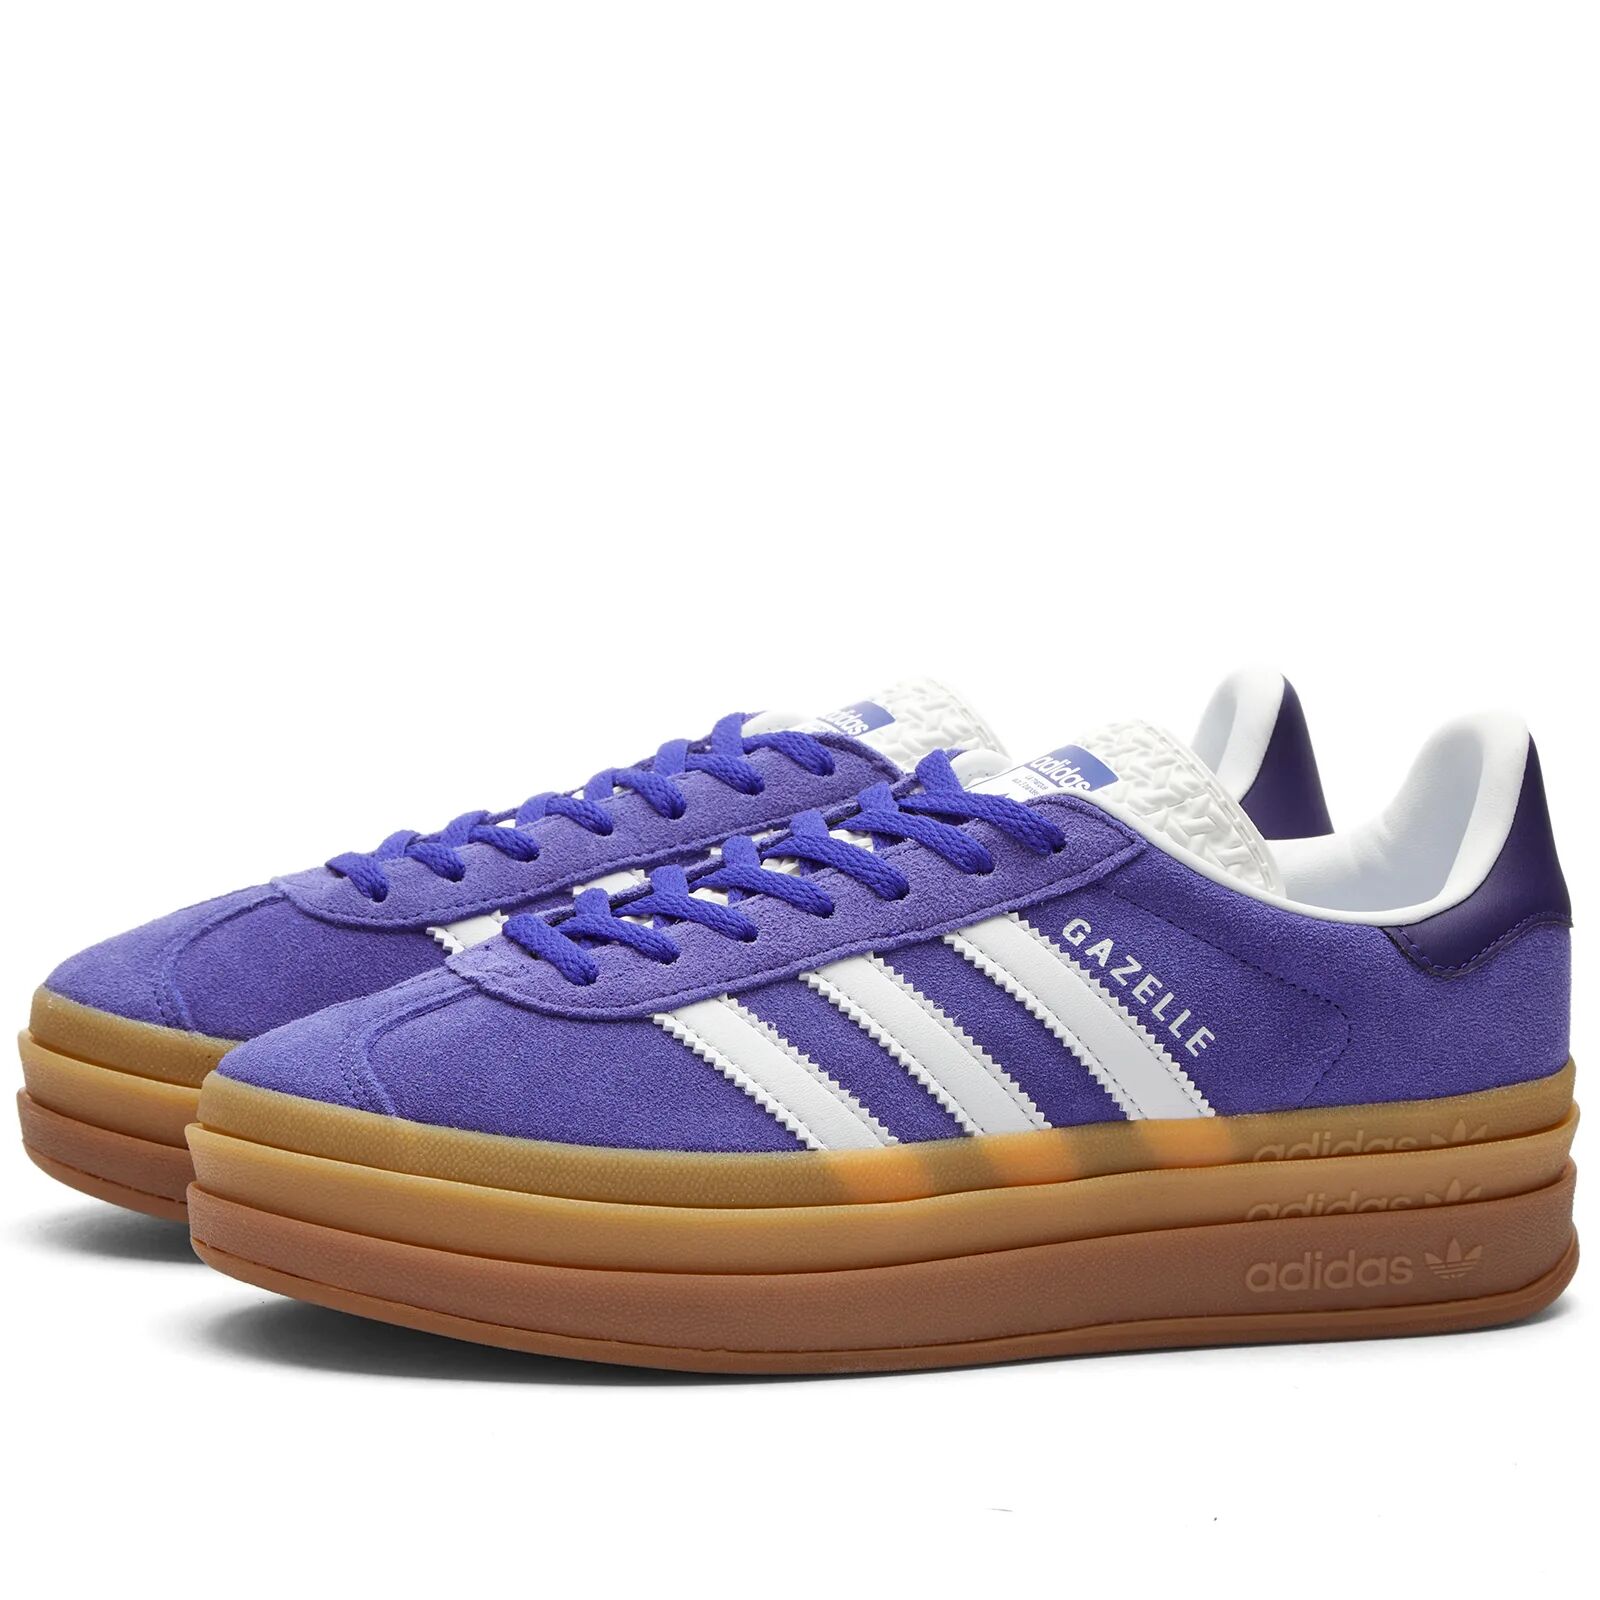 Adidas Women's GAZELLE BOLD W Sneakers in Energy Ink/White/Collegiate Purple, Size UK 7.5